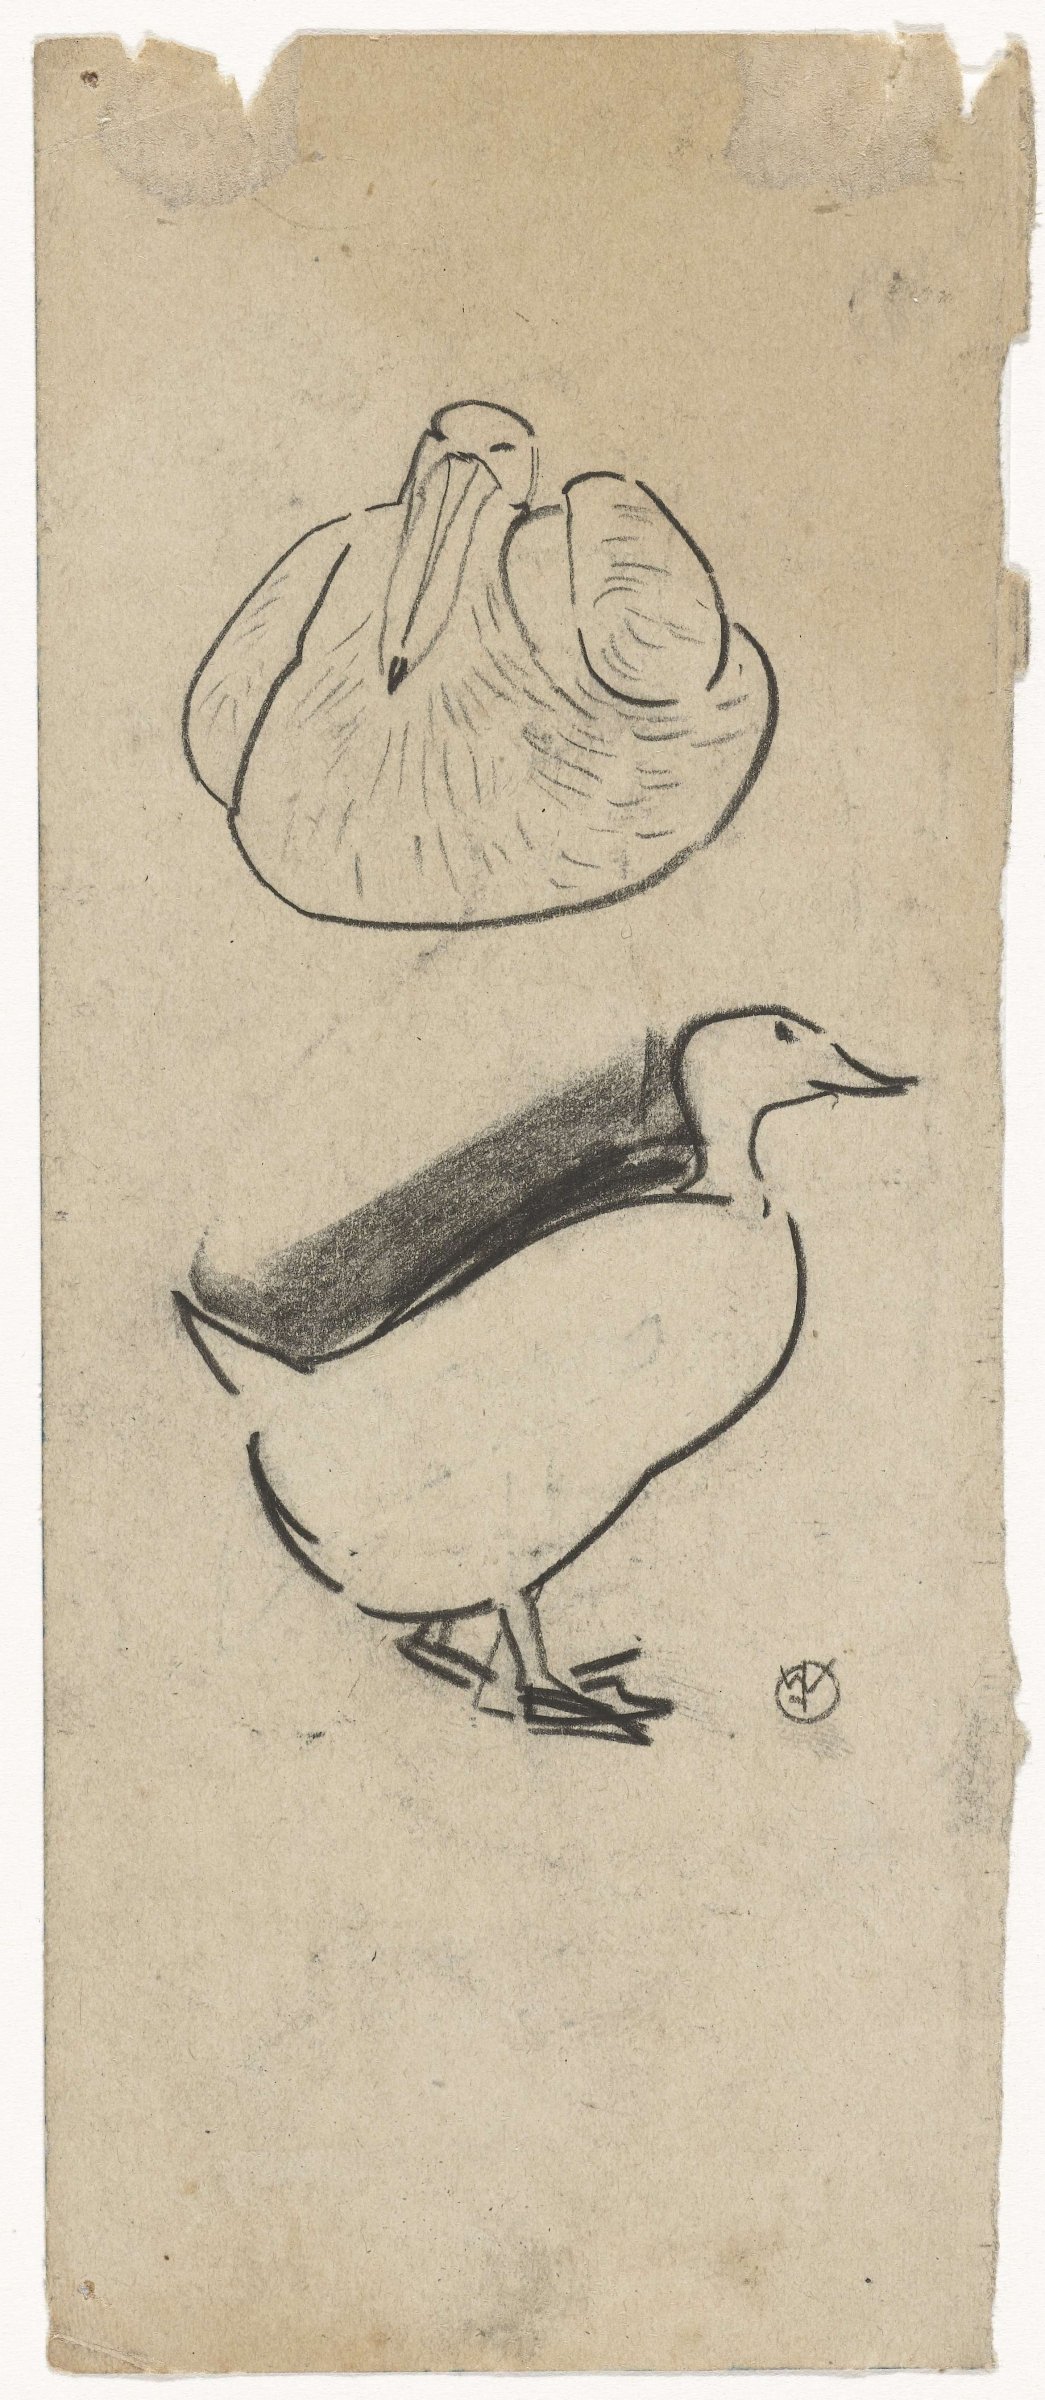 Duck and a seated bird, Gerrit Willem Dijsselhof, 1876 - 1924